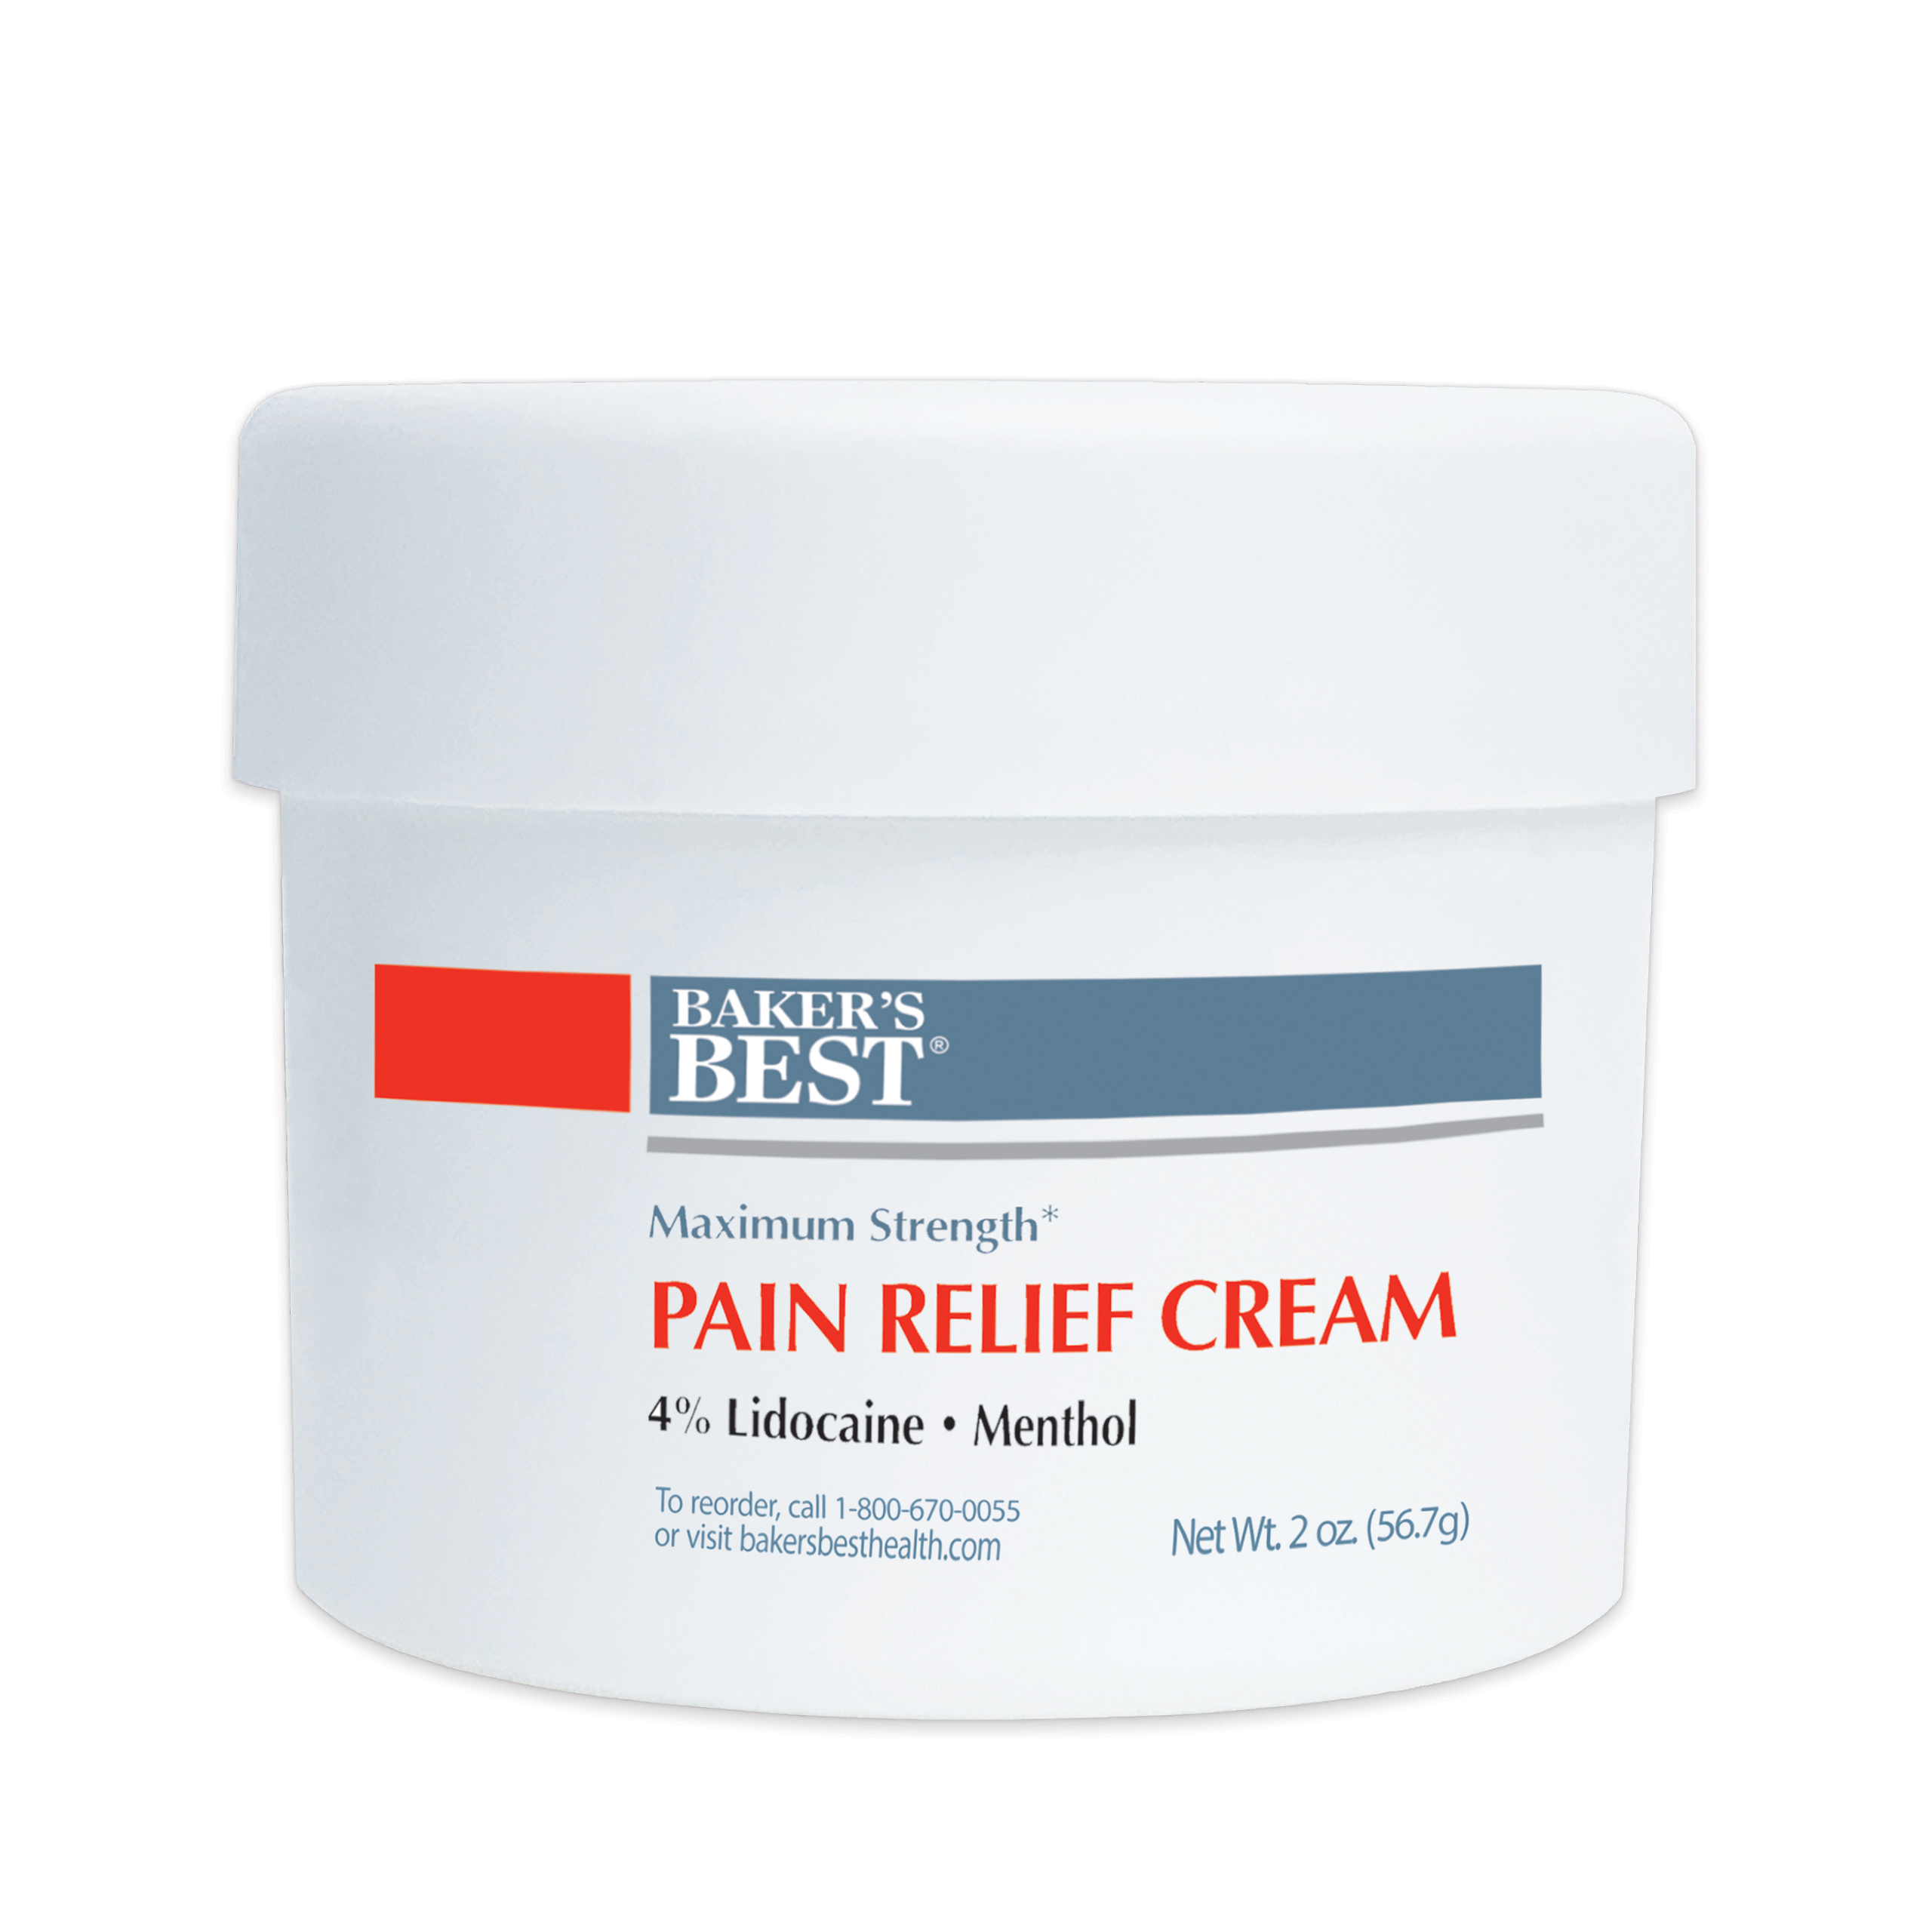 Maximum Strength Lidocaine Pain Relief Cream